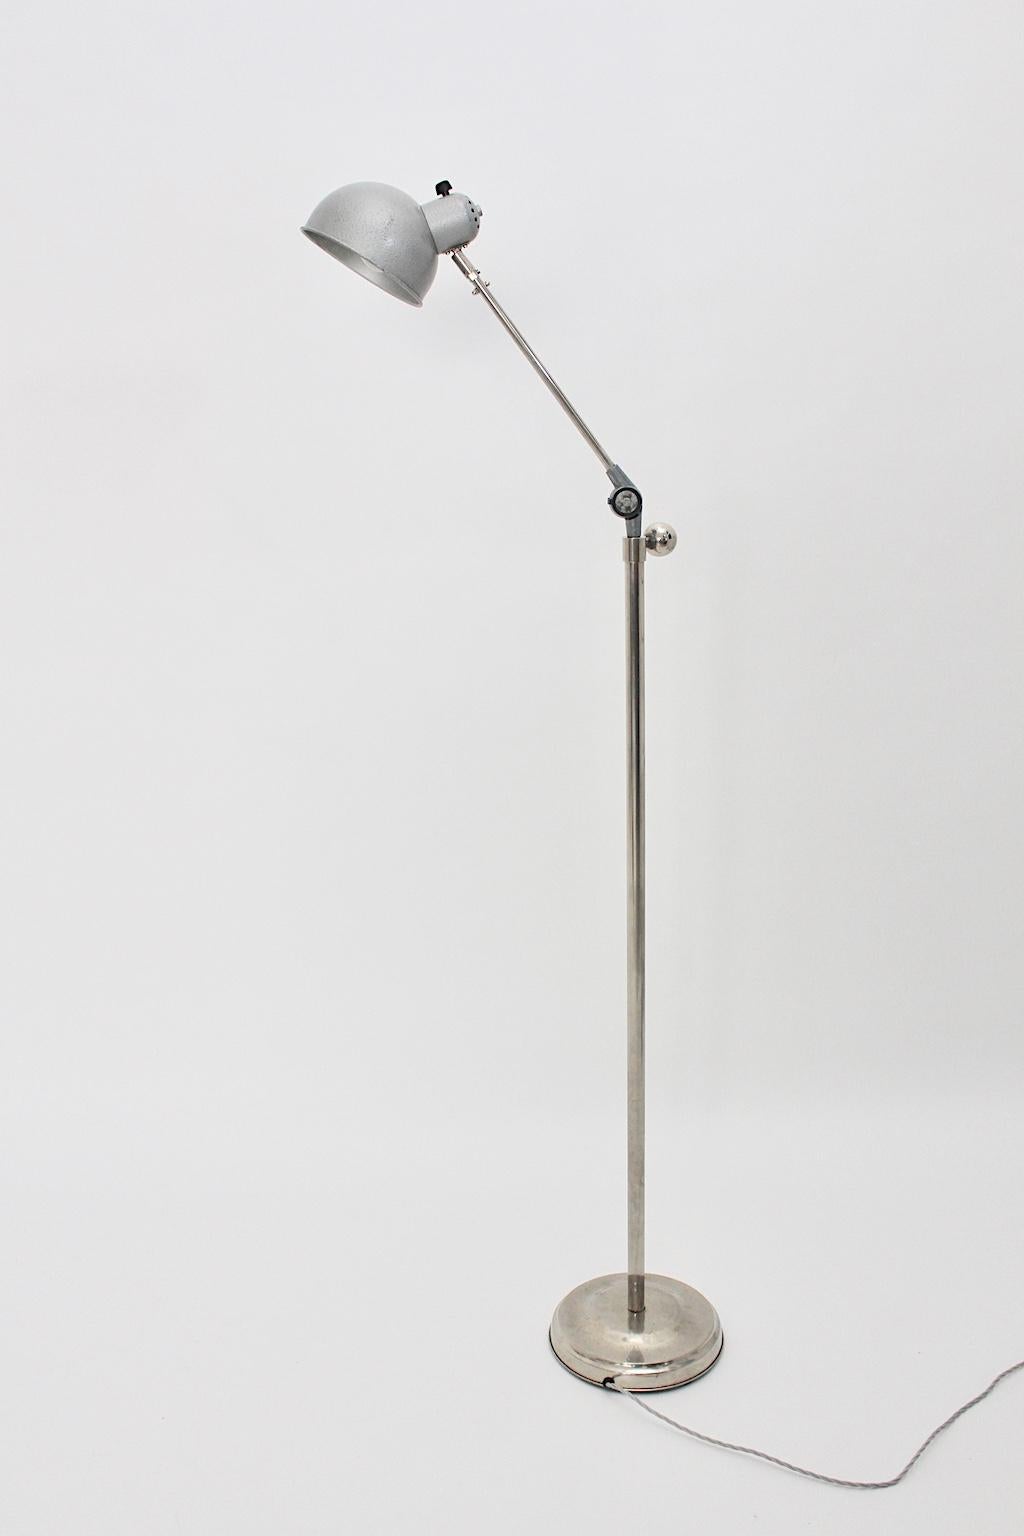 Lampadaire Bauhaus Art Déco en métal nickelé, pivotant et réglable en hauteur de 137 cm à 170 cm.
Le lampadaire a été fabriqué en métal nickelé et présente une belle patine.
De plus, l'abat-jour en métal a été laqué en gris. De beaux détails